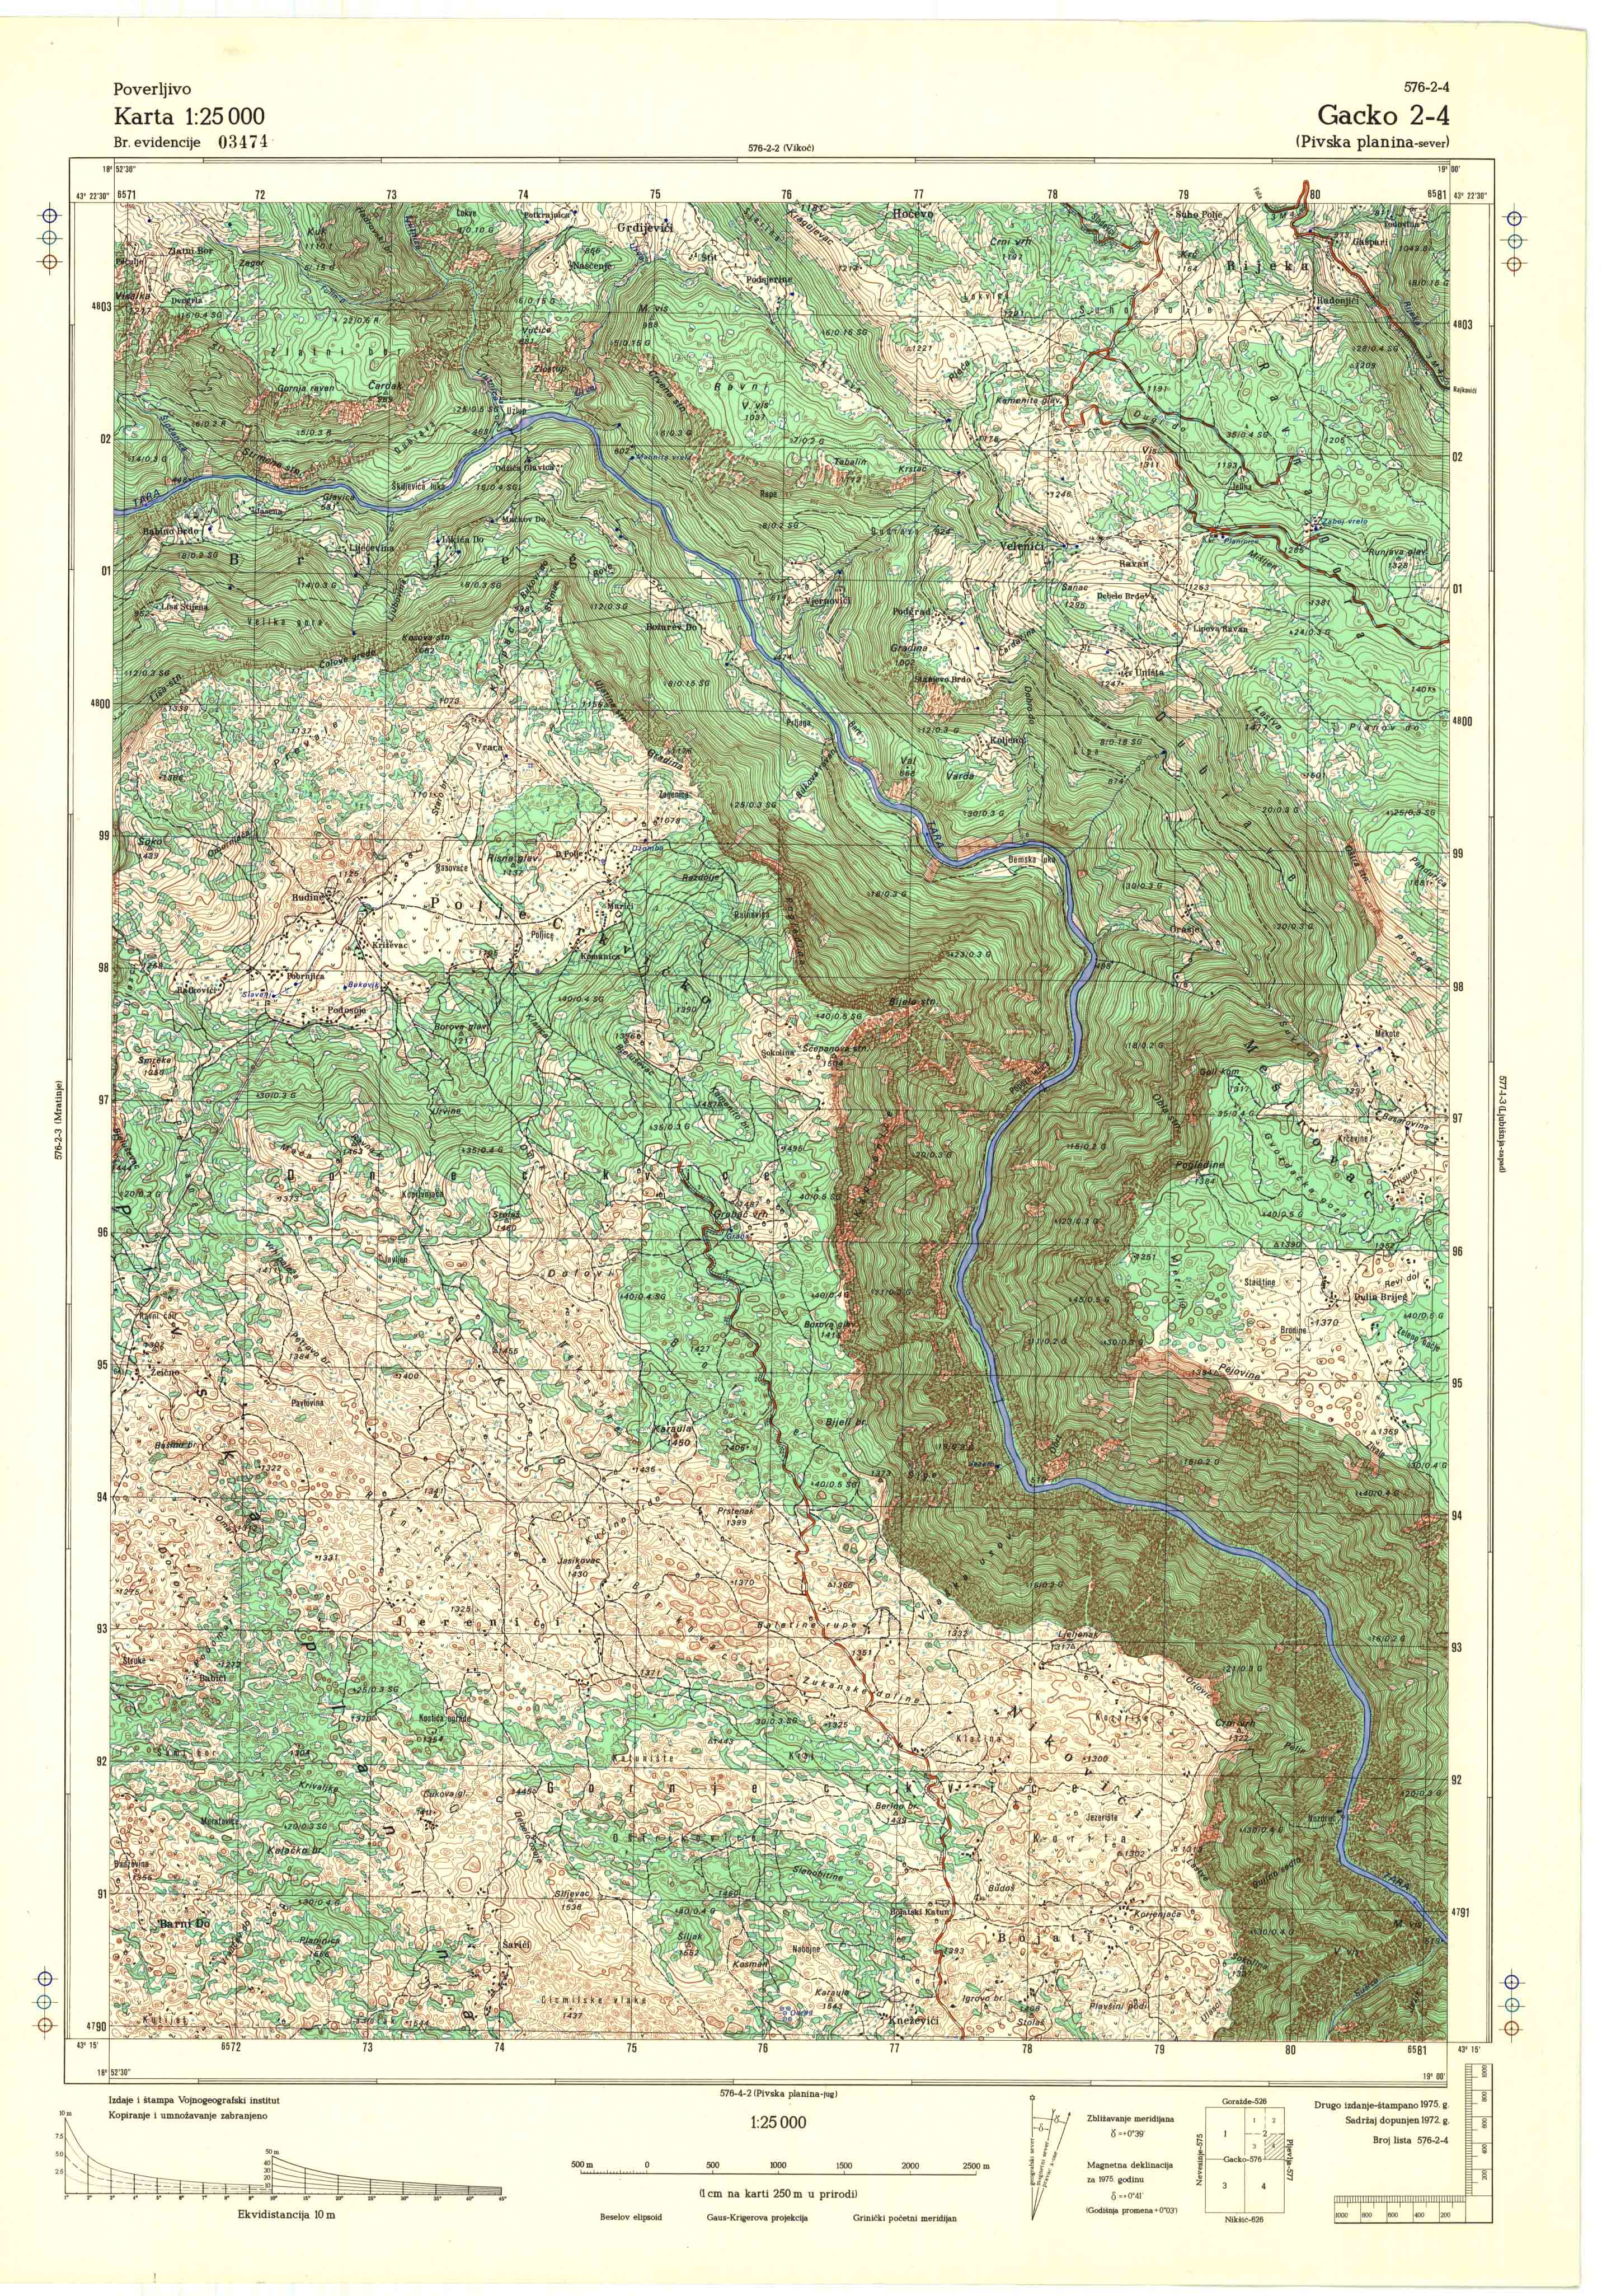  topografska karta srbije 25000 JNA  Gacko